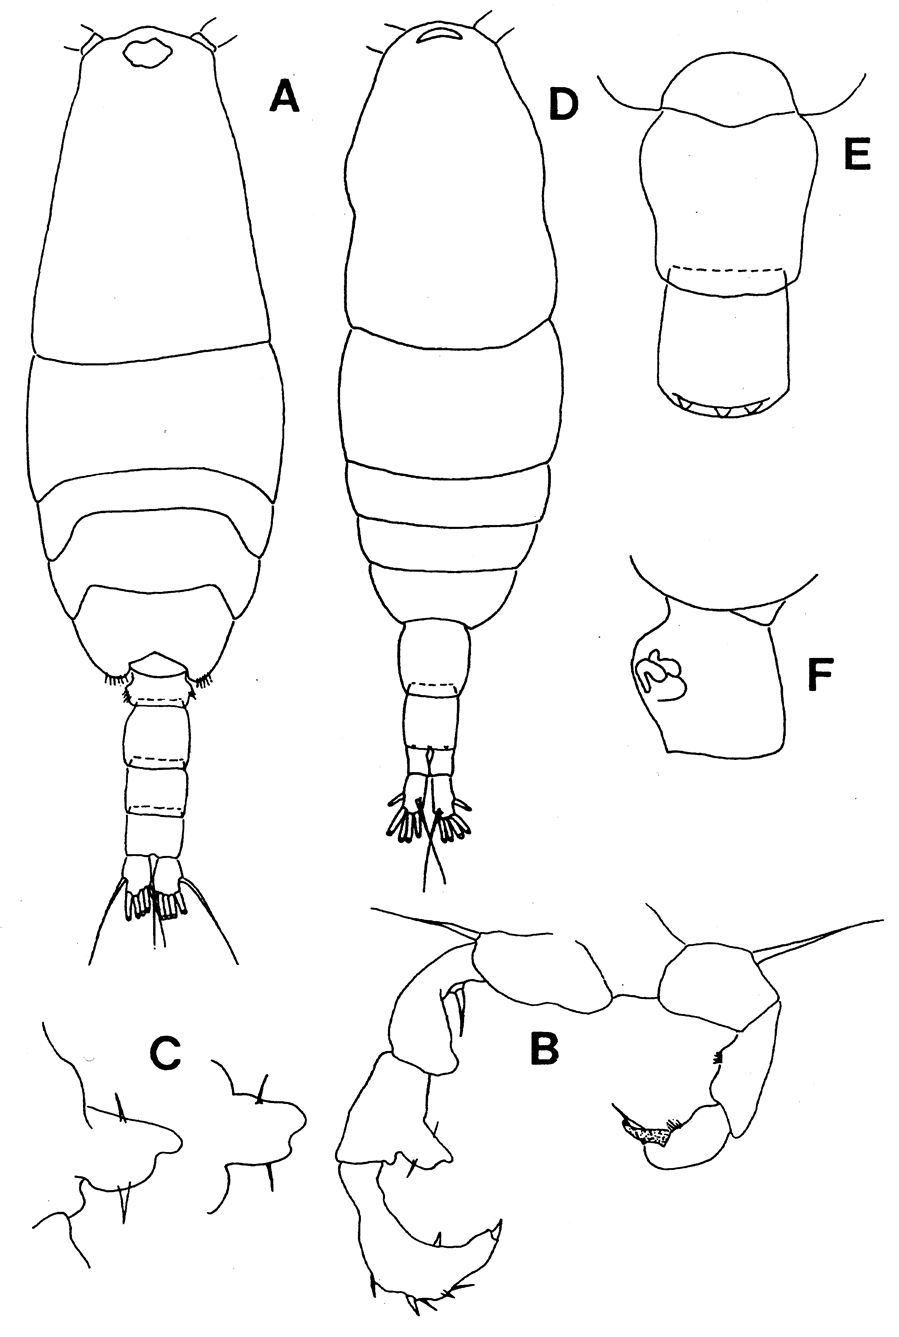 Species Acartia (Acartiura) omorii - Plate 8 of morphological figures